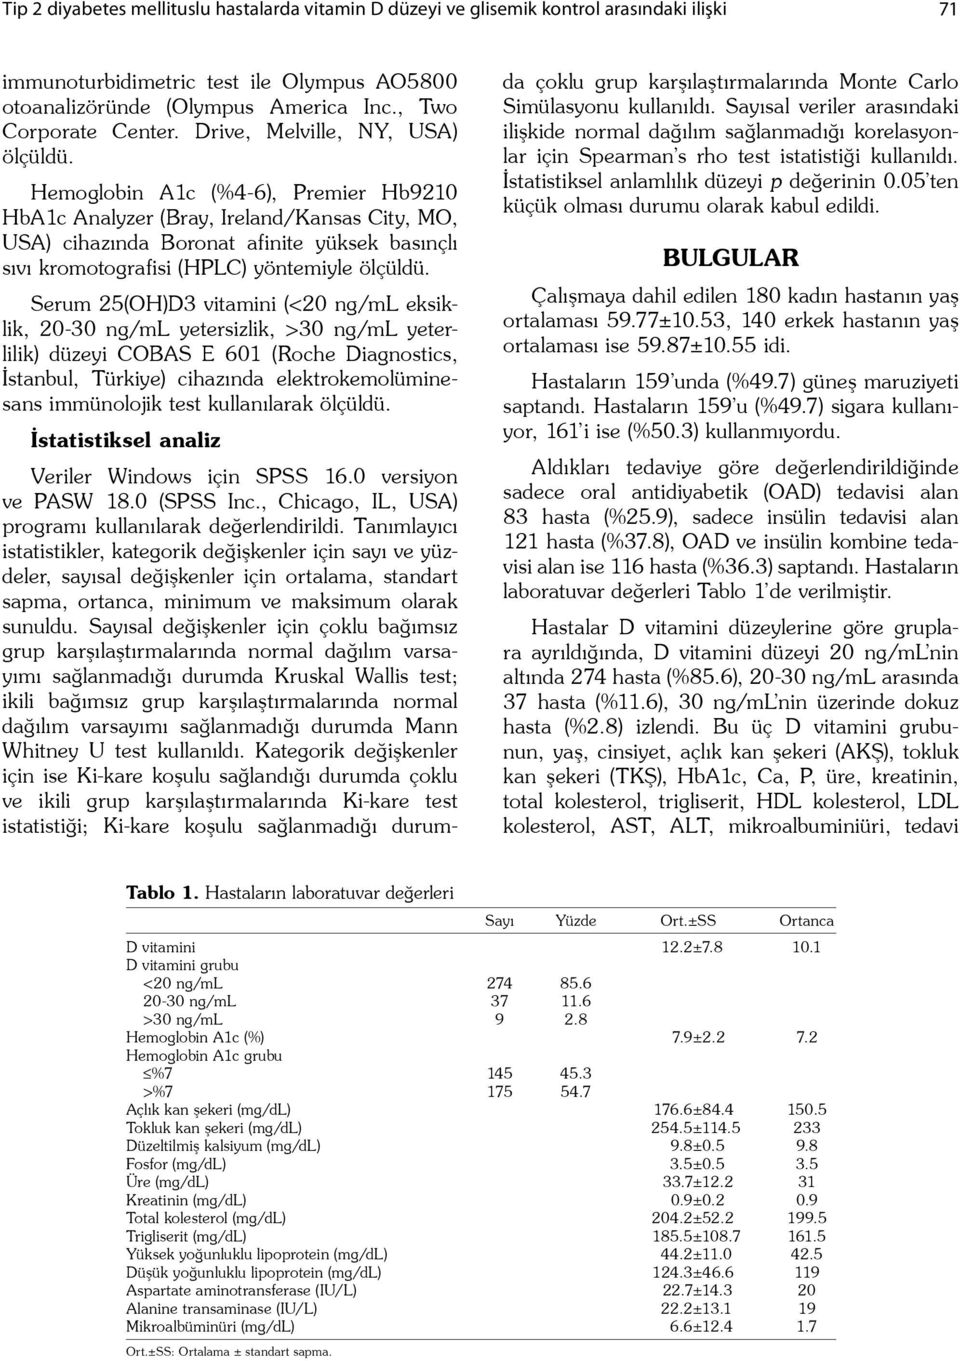 Hemoglobin A1c (%4-6), Premier Hb9210 HbA1c Analyzer (Bray, Ireland/Kansas City, MO, USA) cihazında Boronat afinite yüksek basınçlı sıvı kromotografisi (HPLC) yöntemiyle ölçüldü.